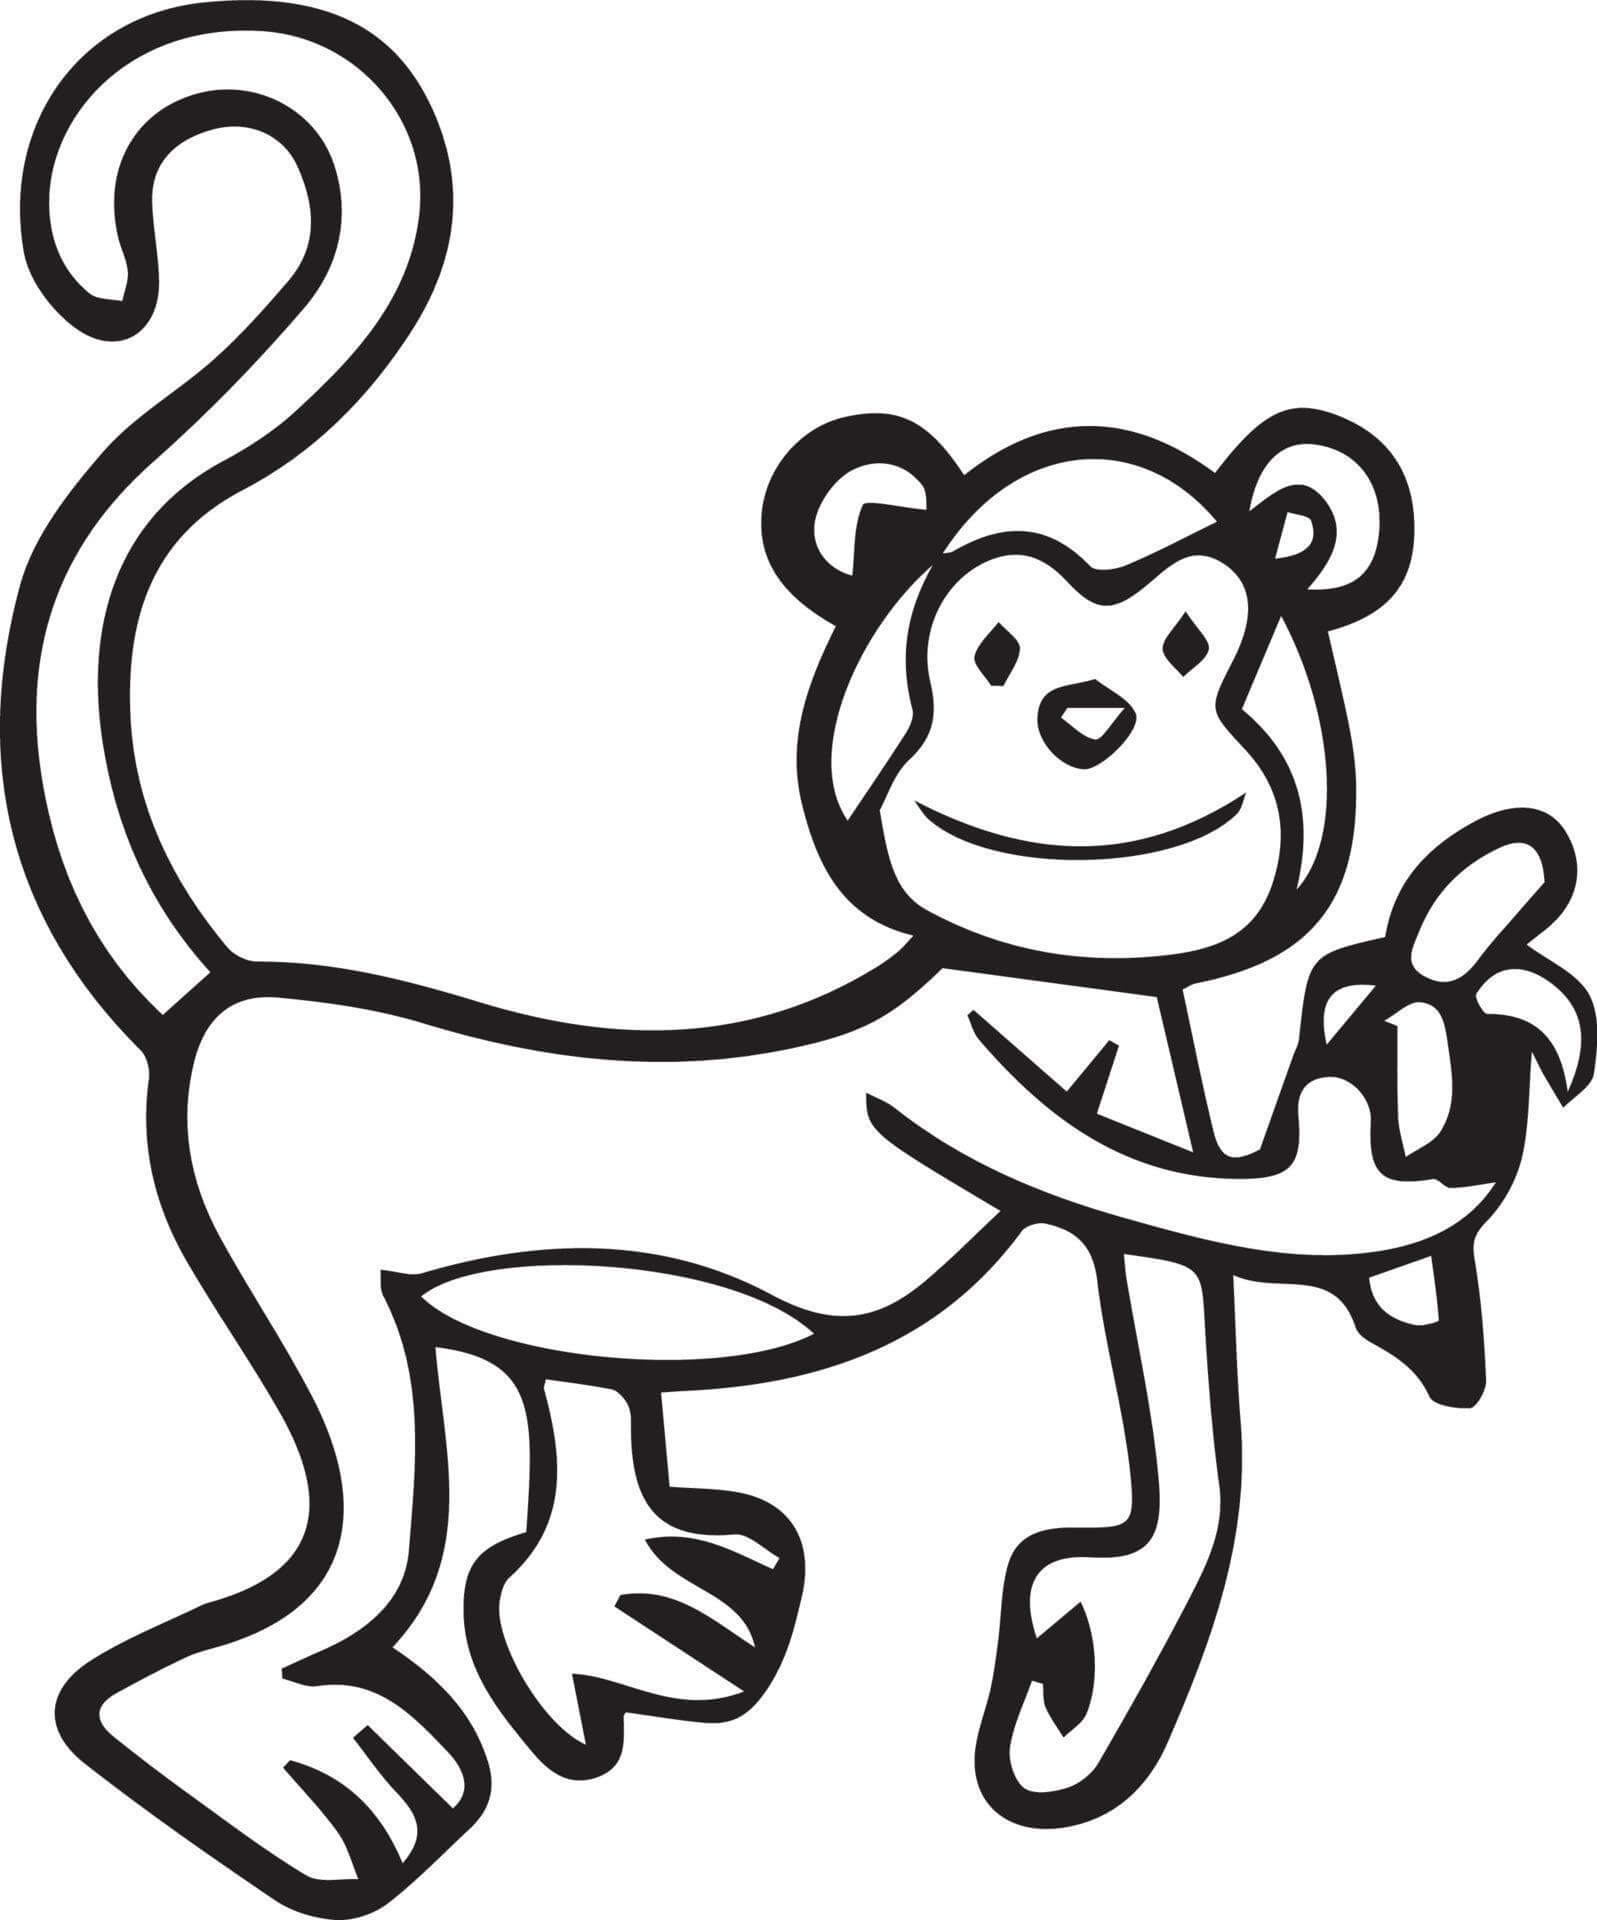 Mono de dibujo Básico